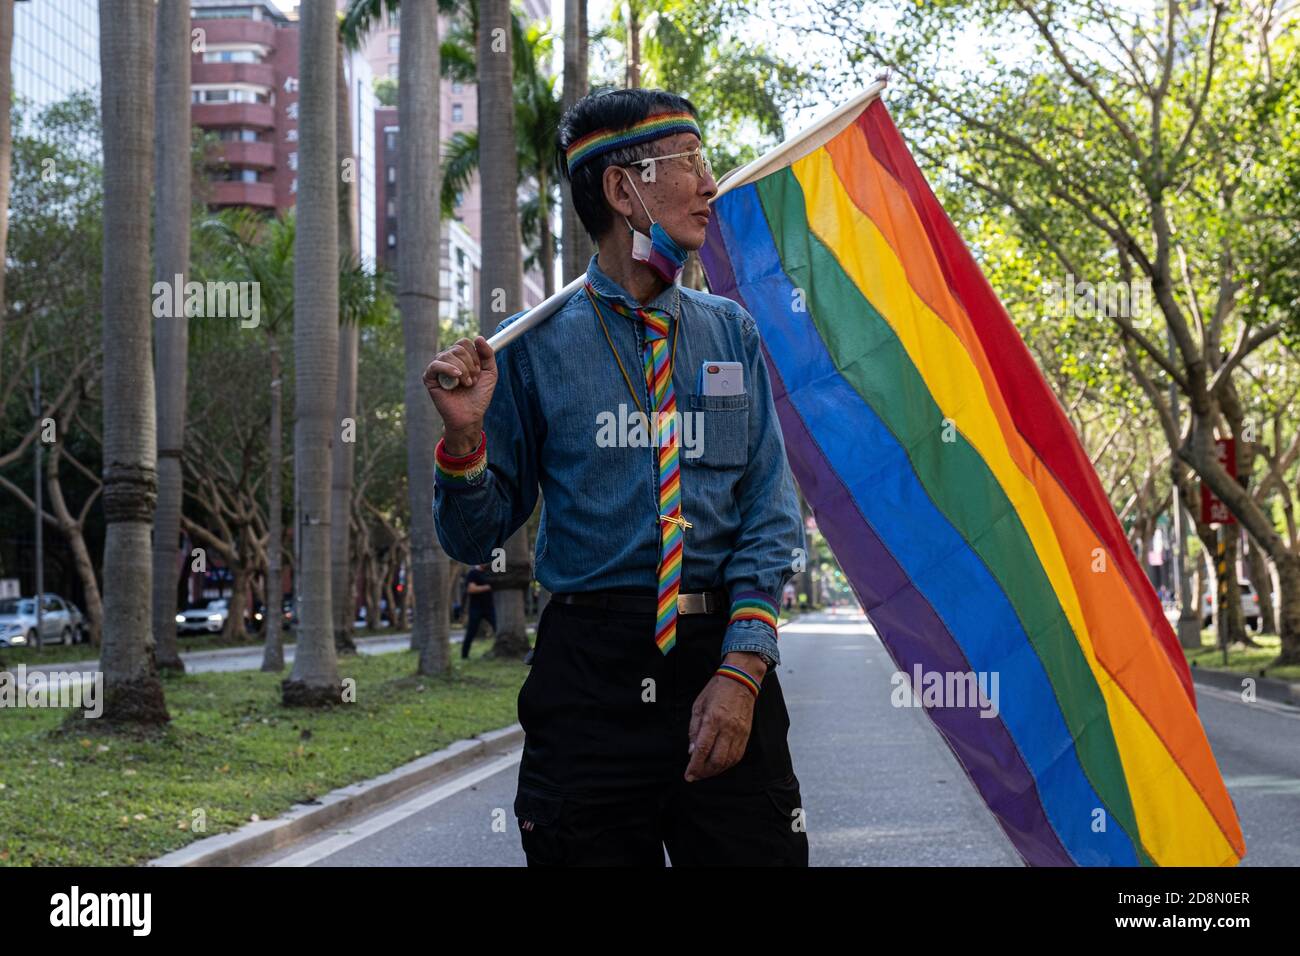 Der LGBTQ-Menschenrechtsaktivist Chi Chia-wei sah während der Taiwan Pride Parade 2020 eine Regenbogenfahne halten.Mehr als 130,000 marschierten am Samstag in Taipei zu einer der weltweit größten LGBT Pride Paraden, zur Feier der 18. Jährlichen Pride Parade der Insel und ihrer erfolgreichen Behandlung der COVID-19 Pandemie. Stockfoto